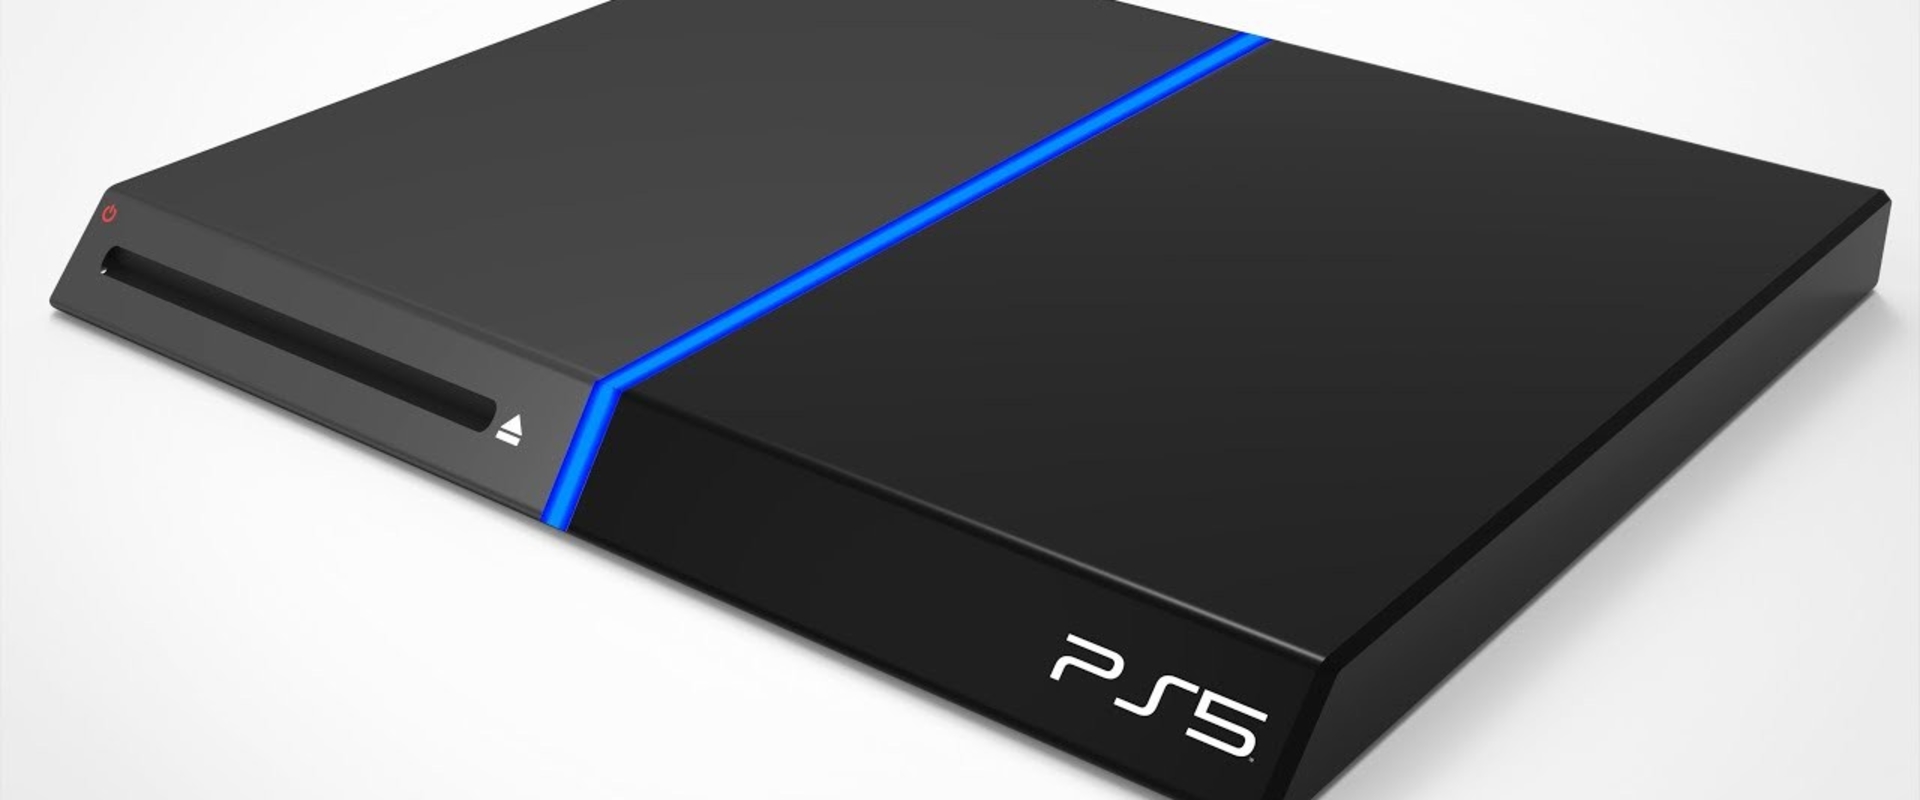 Jövőre már jön a PlayStation 5?